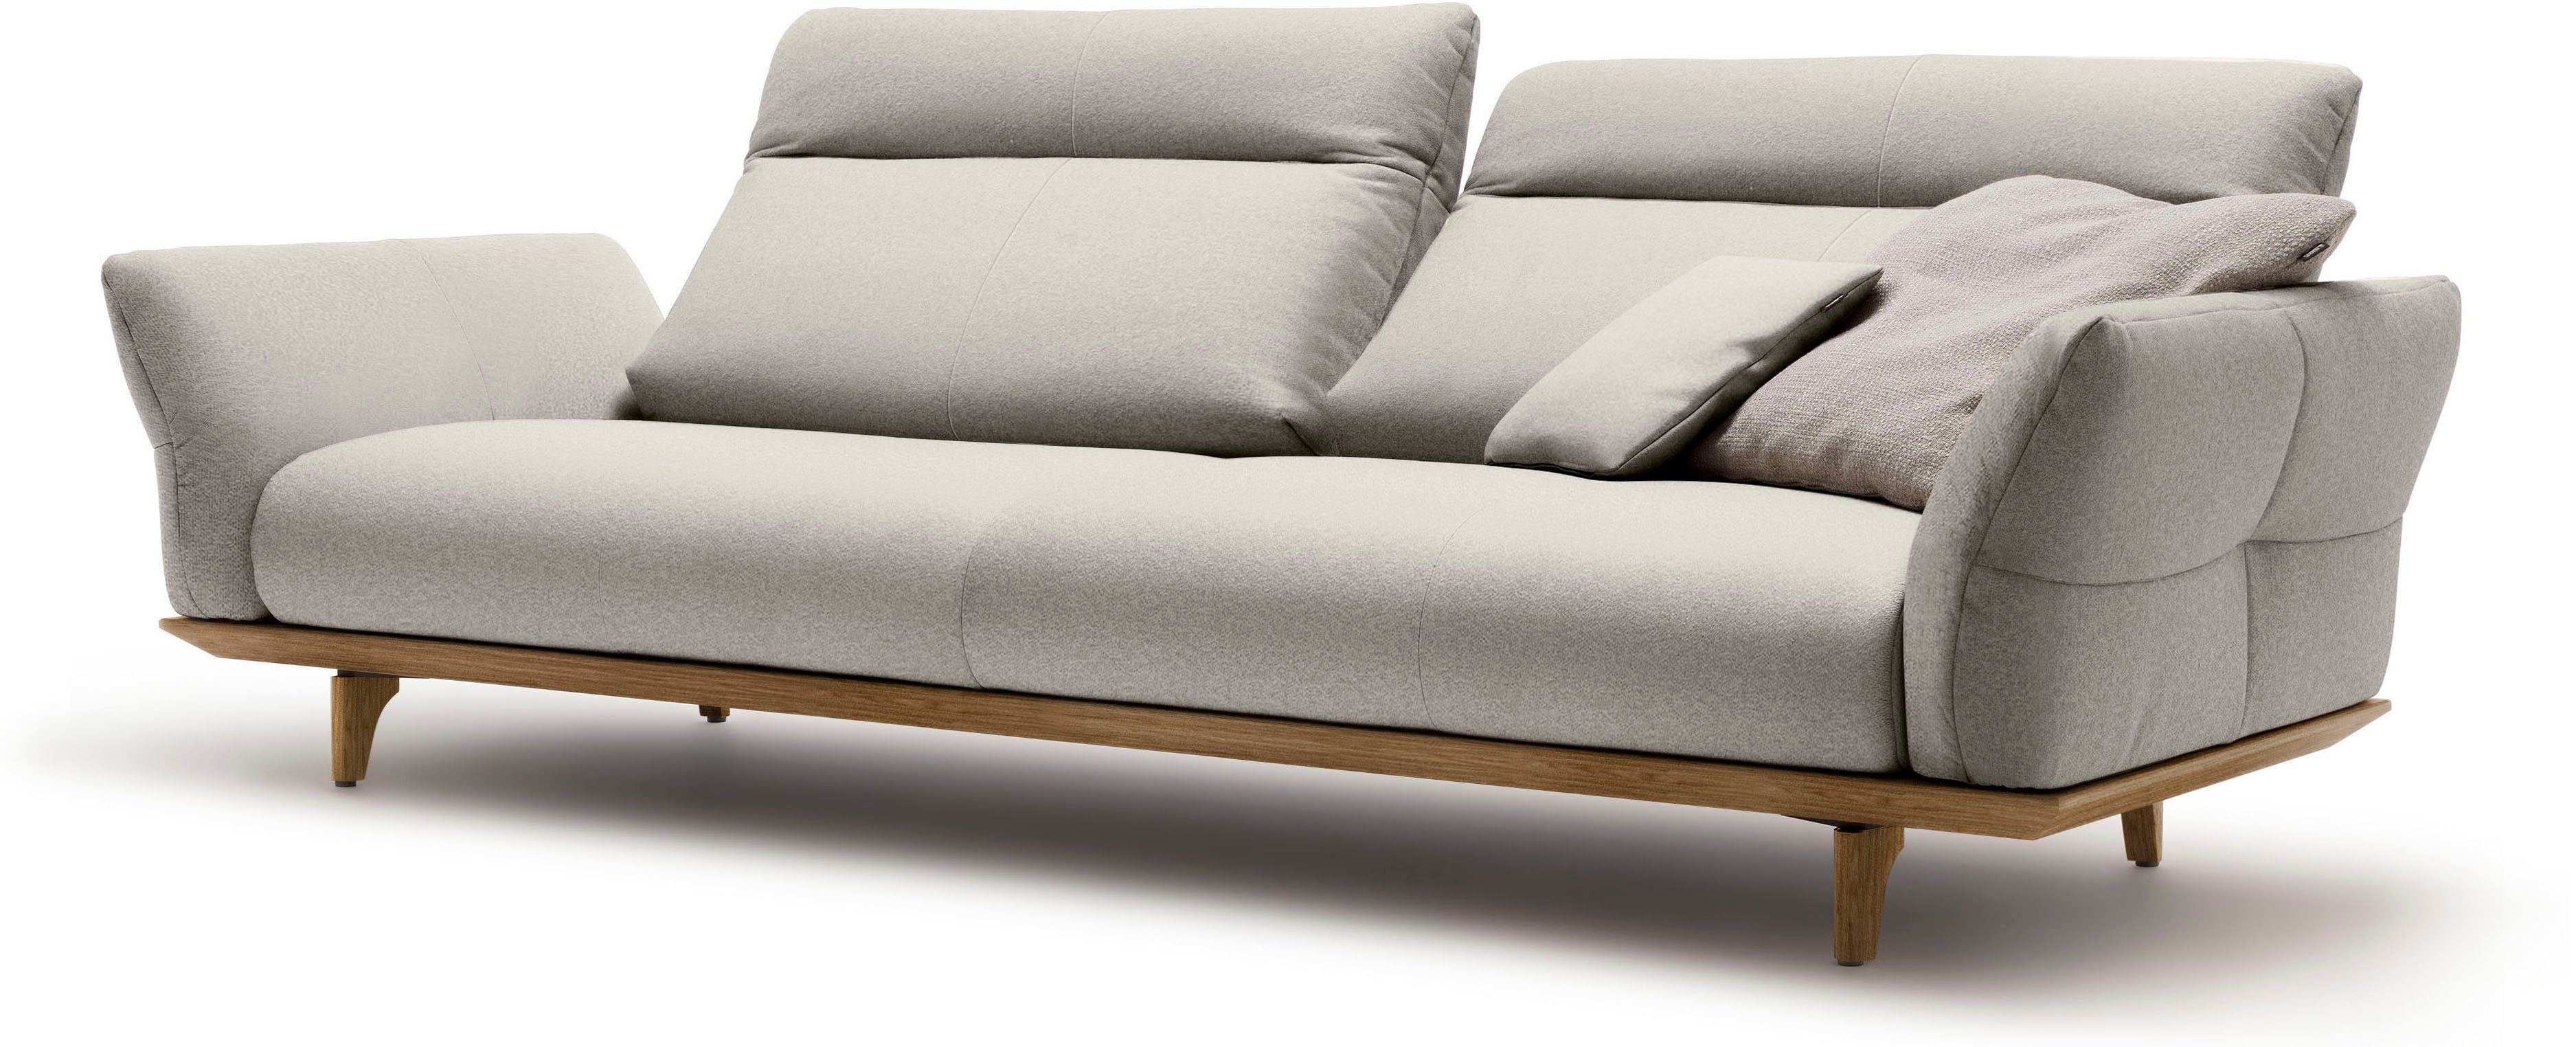 Nussbaum, sofa hs.460, cm 248 Sockel Nussbaum, Füße 4-Sitzer in Breite hülsta